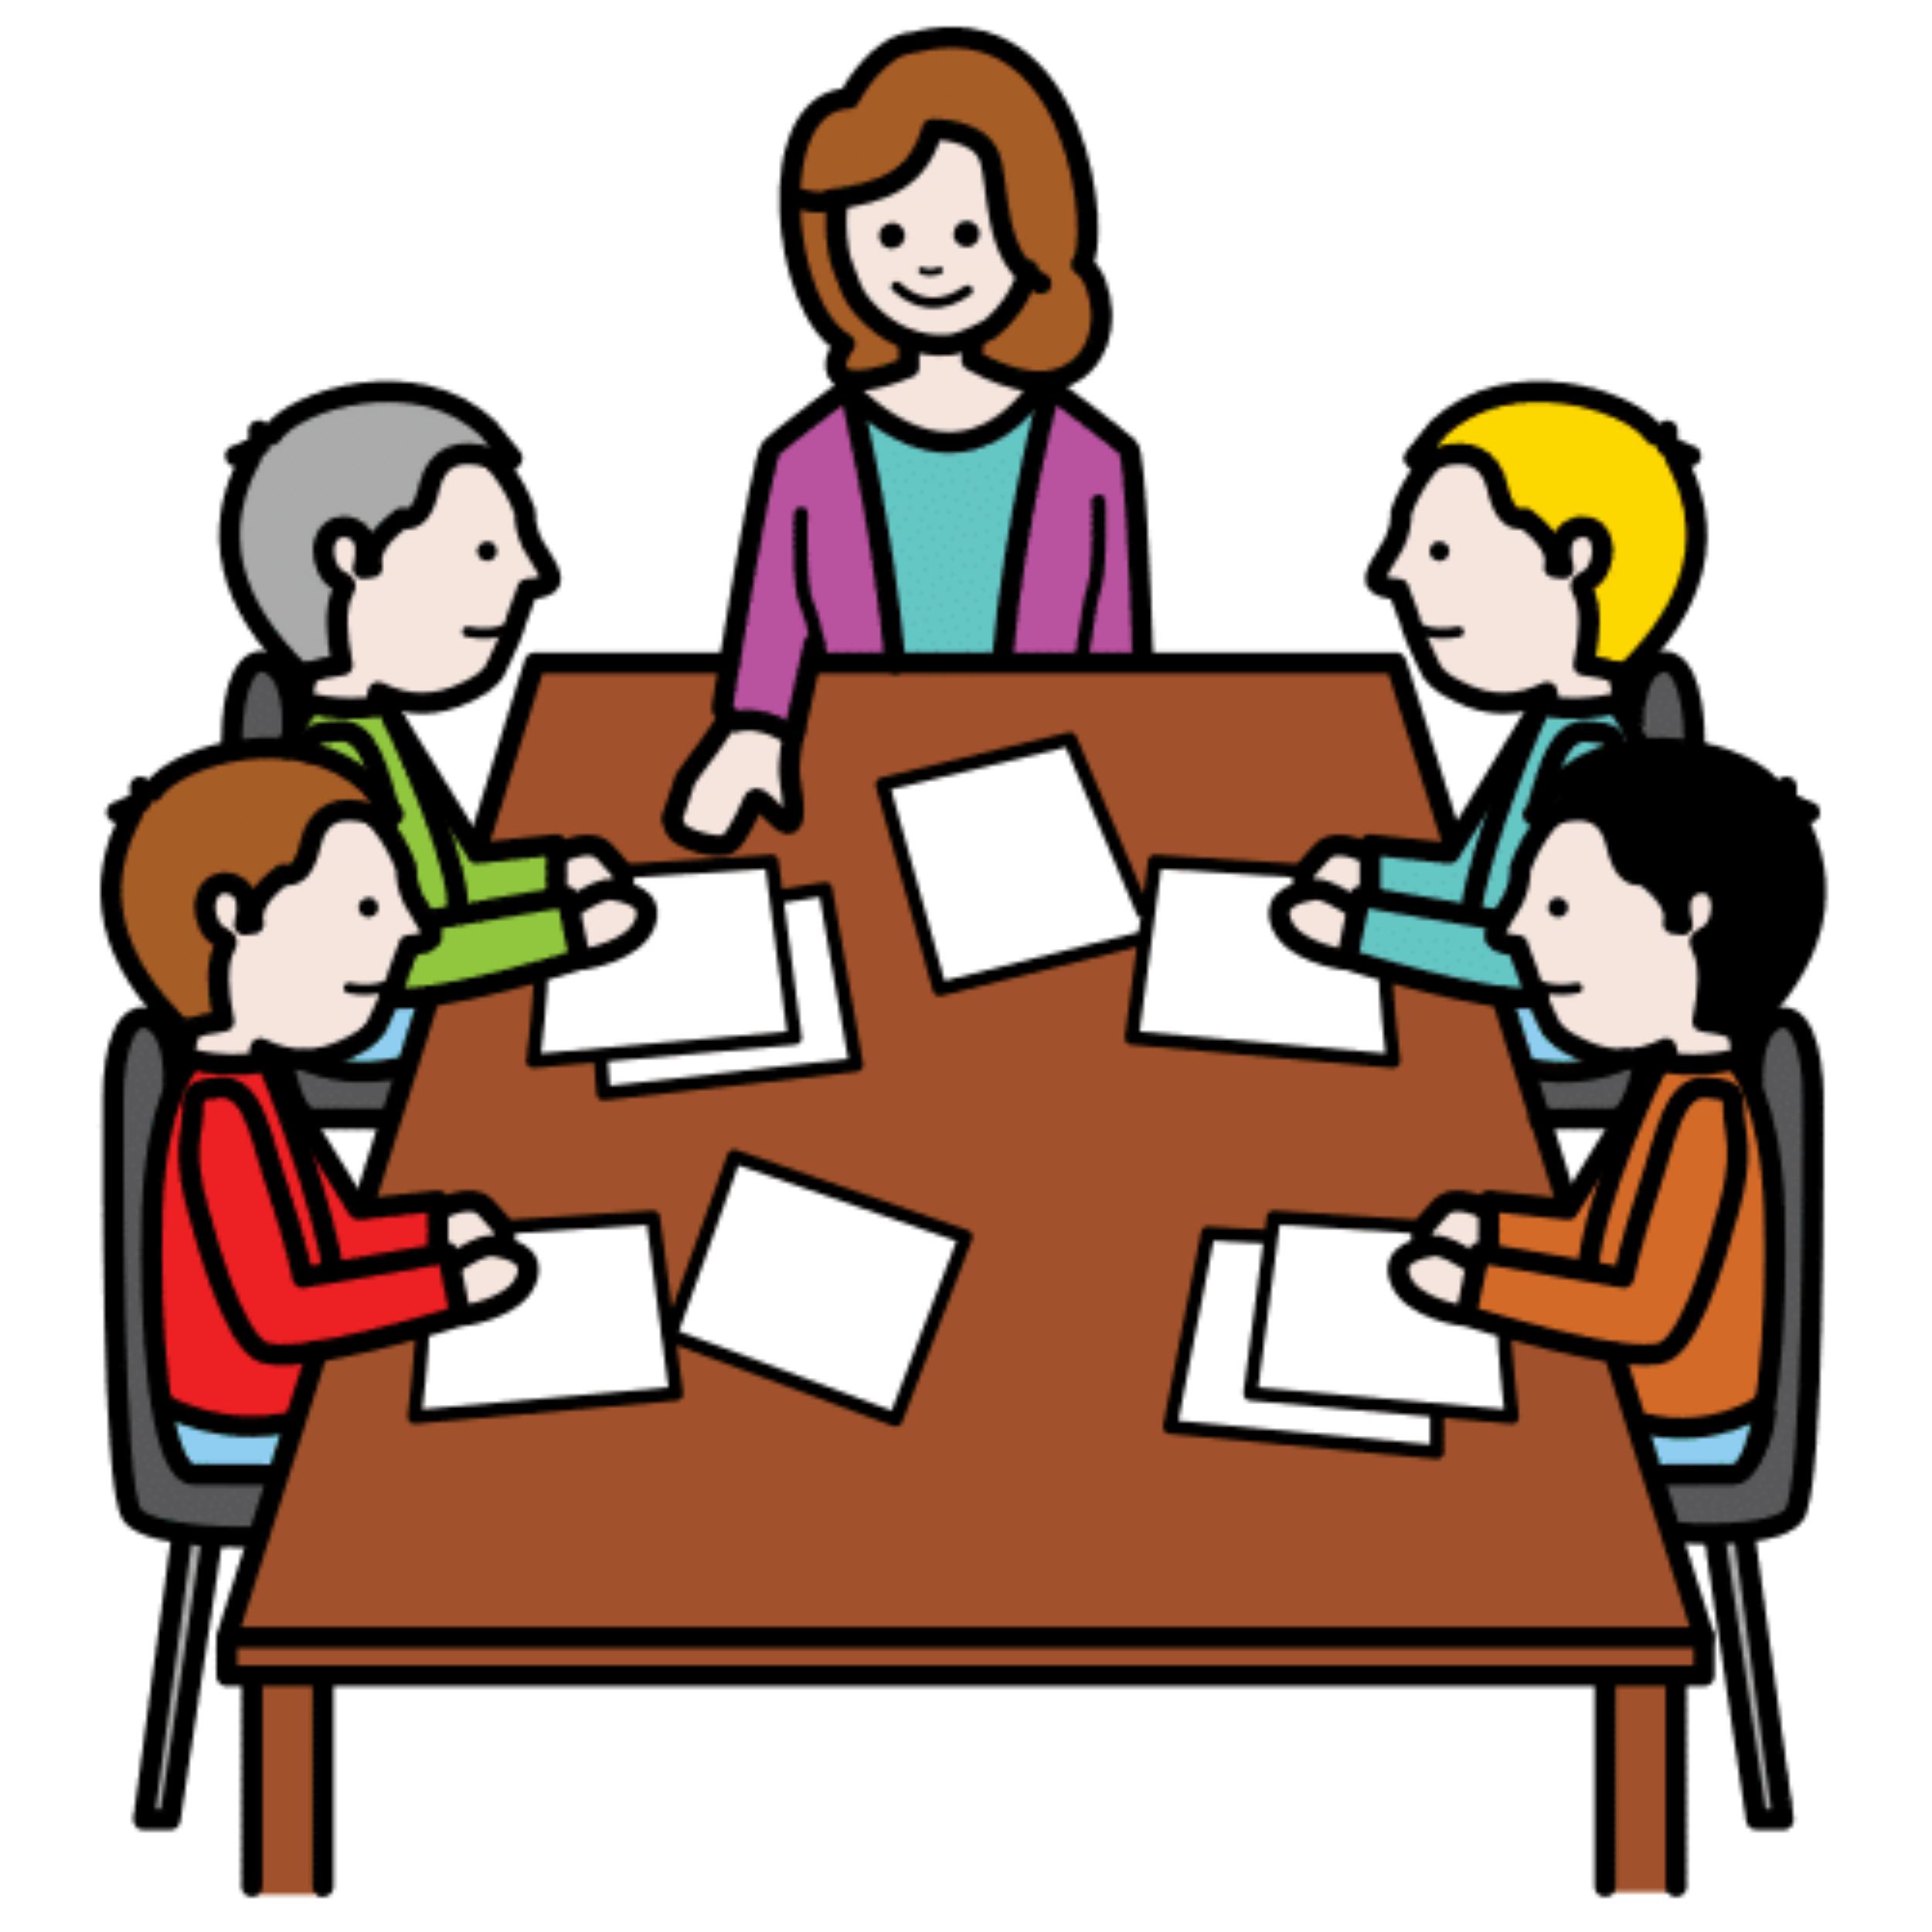 La imagen muestra a cinco personas alrededor de una mesa con folios encima.